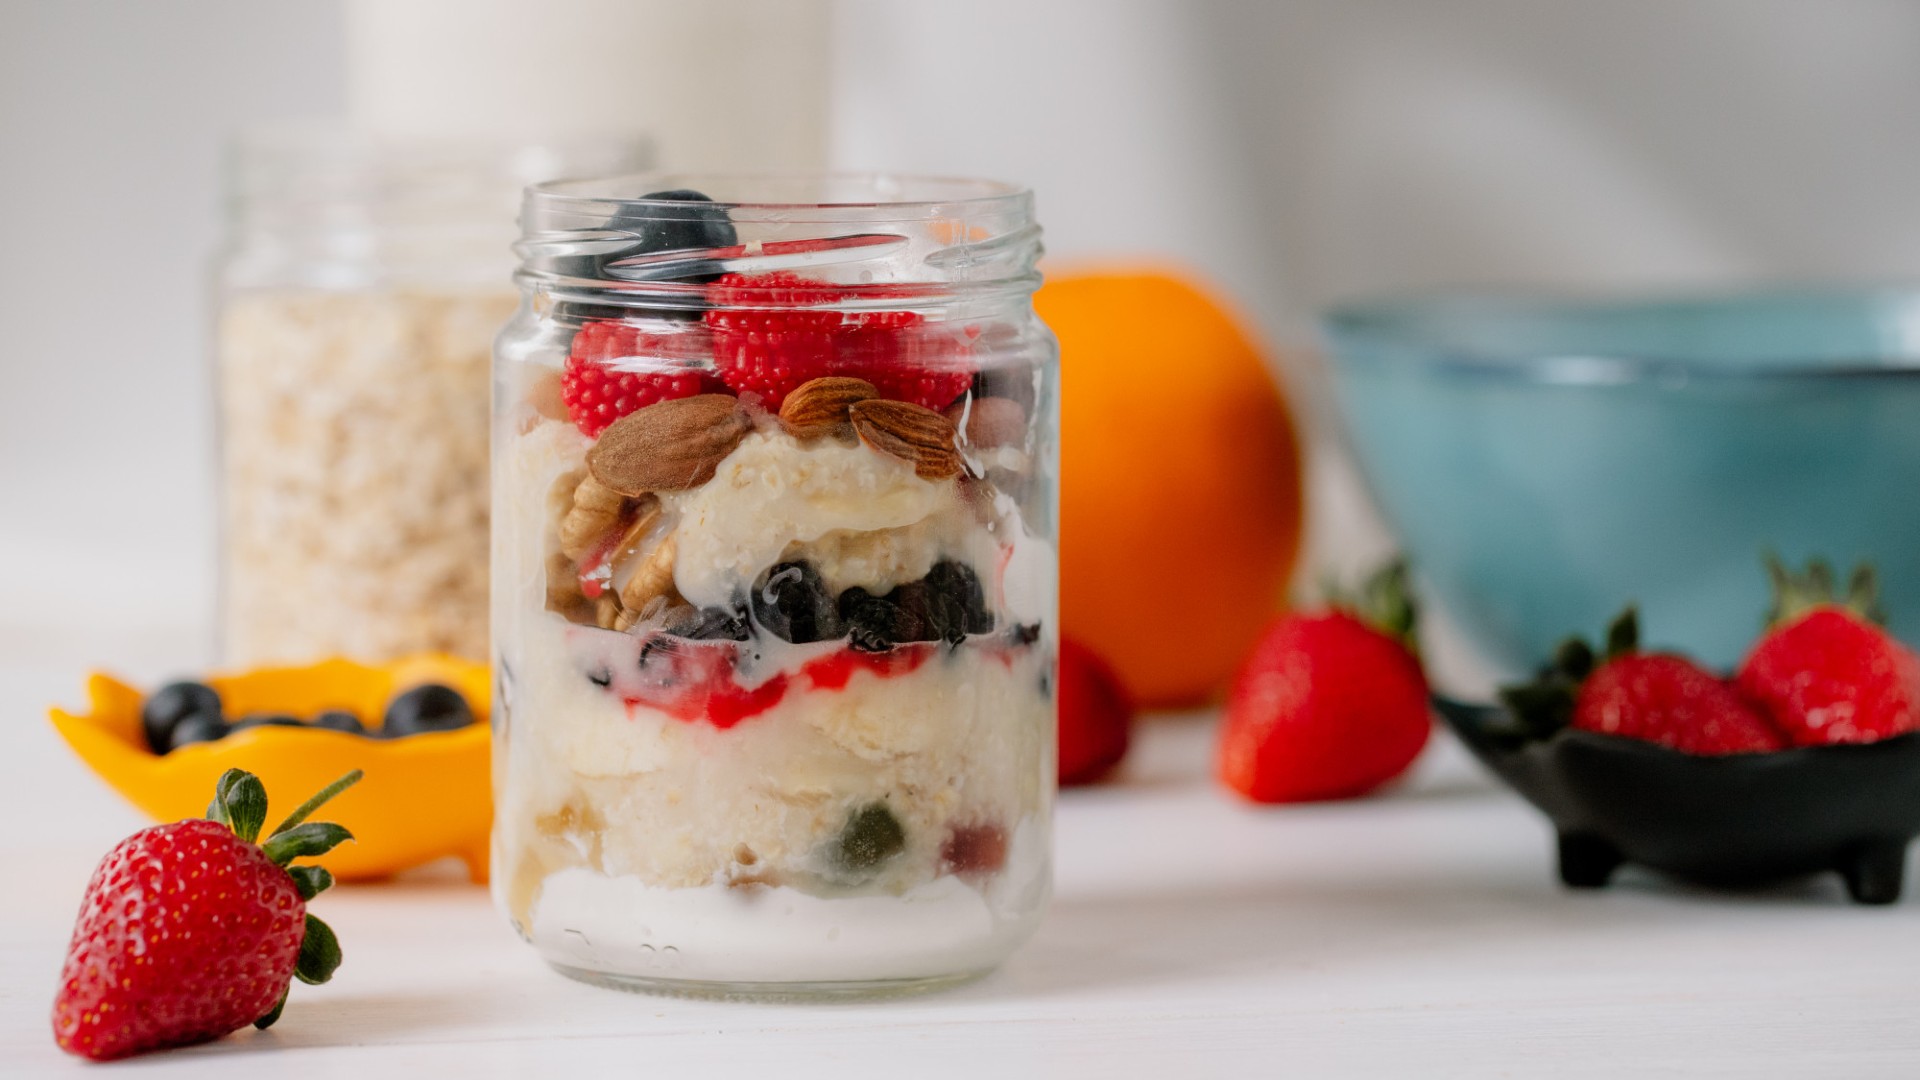 Foto de capa do artigo "Overnight oats: boa opção para o café da manhã e lanche da tarde!"